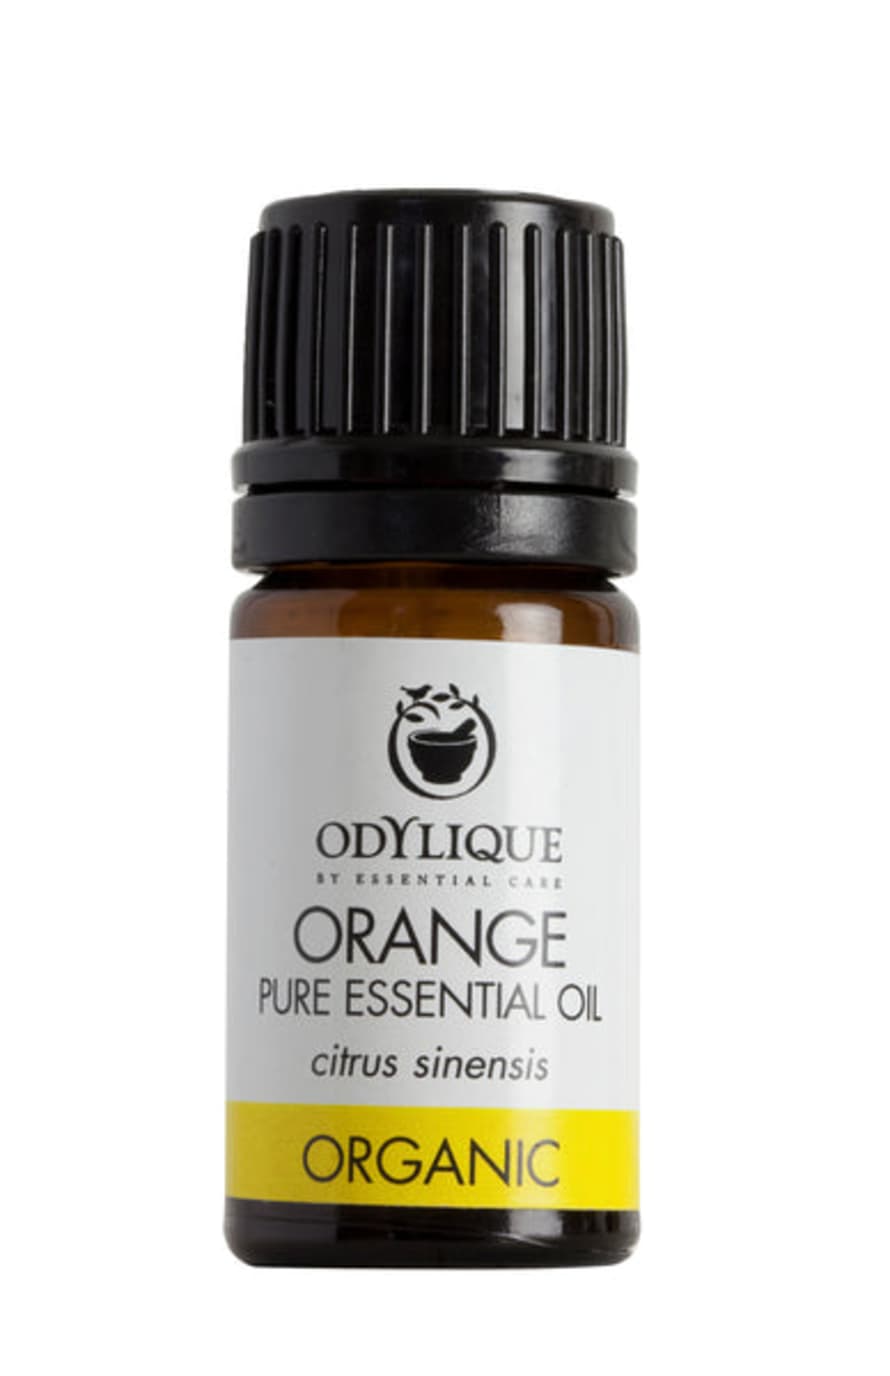 Odylique Organic Orange Essential Oil